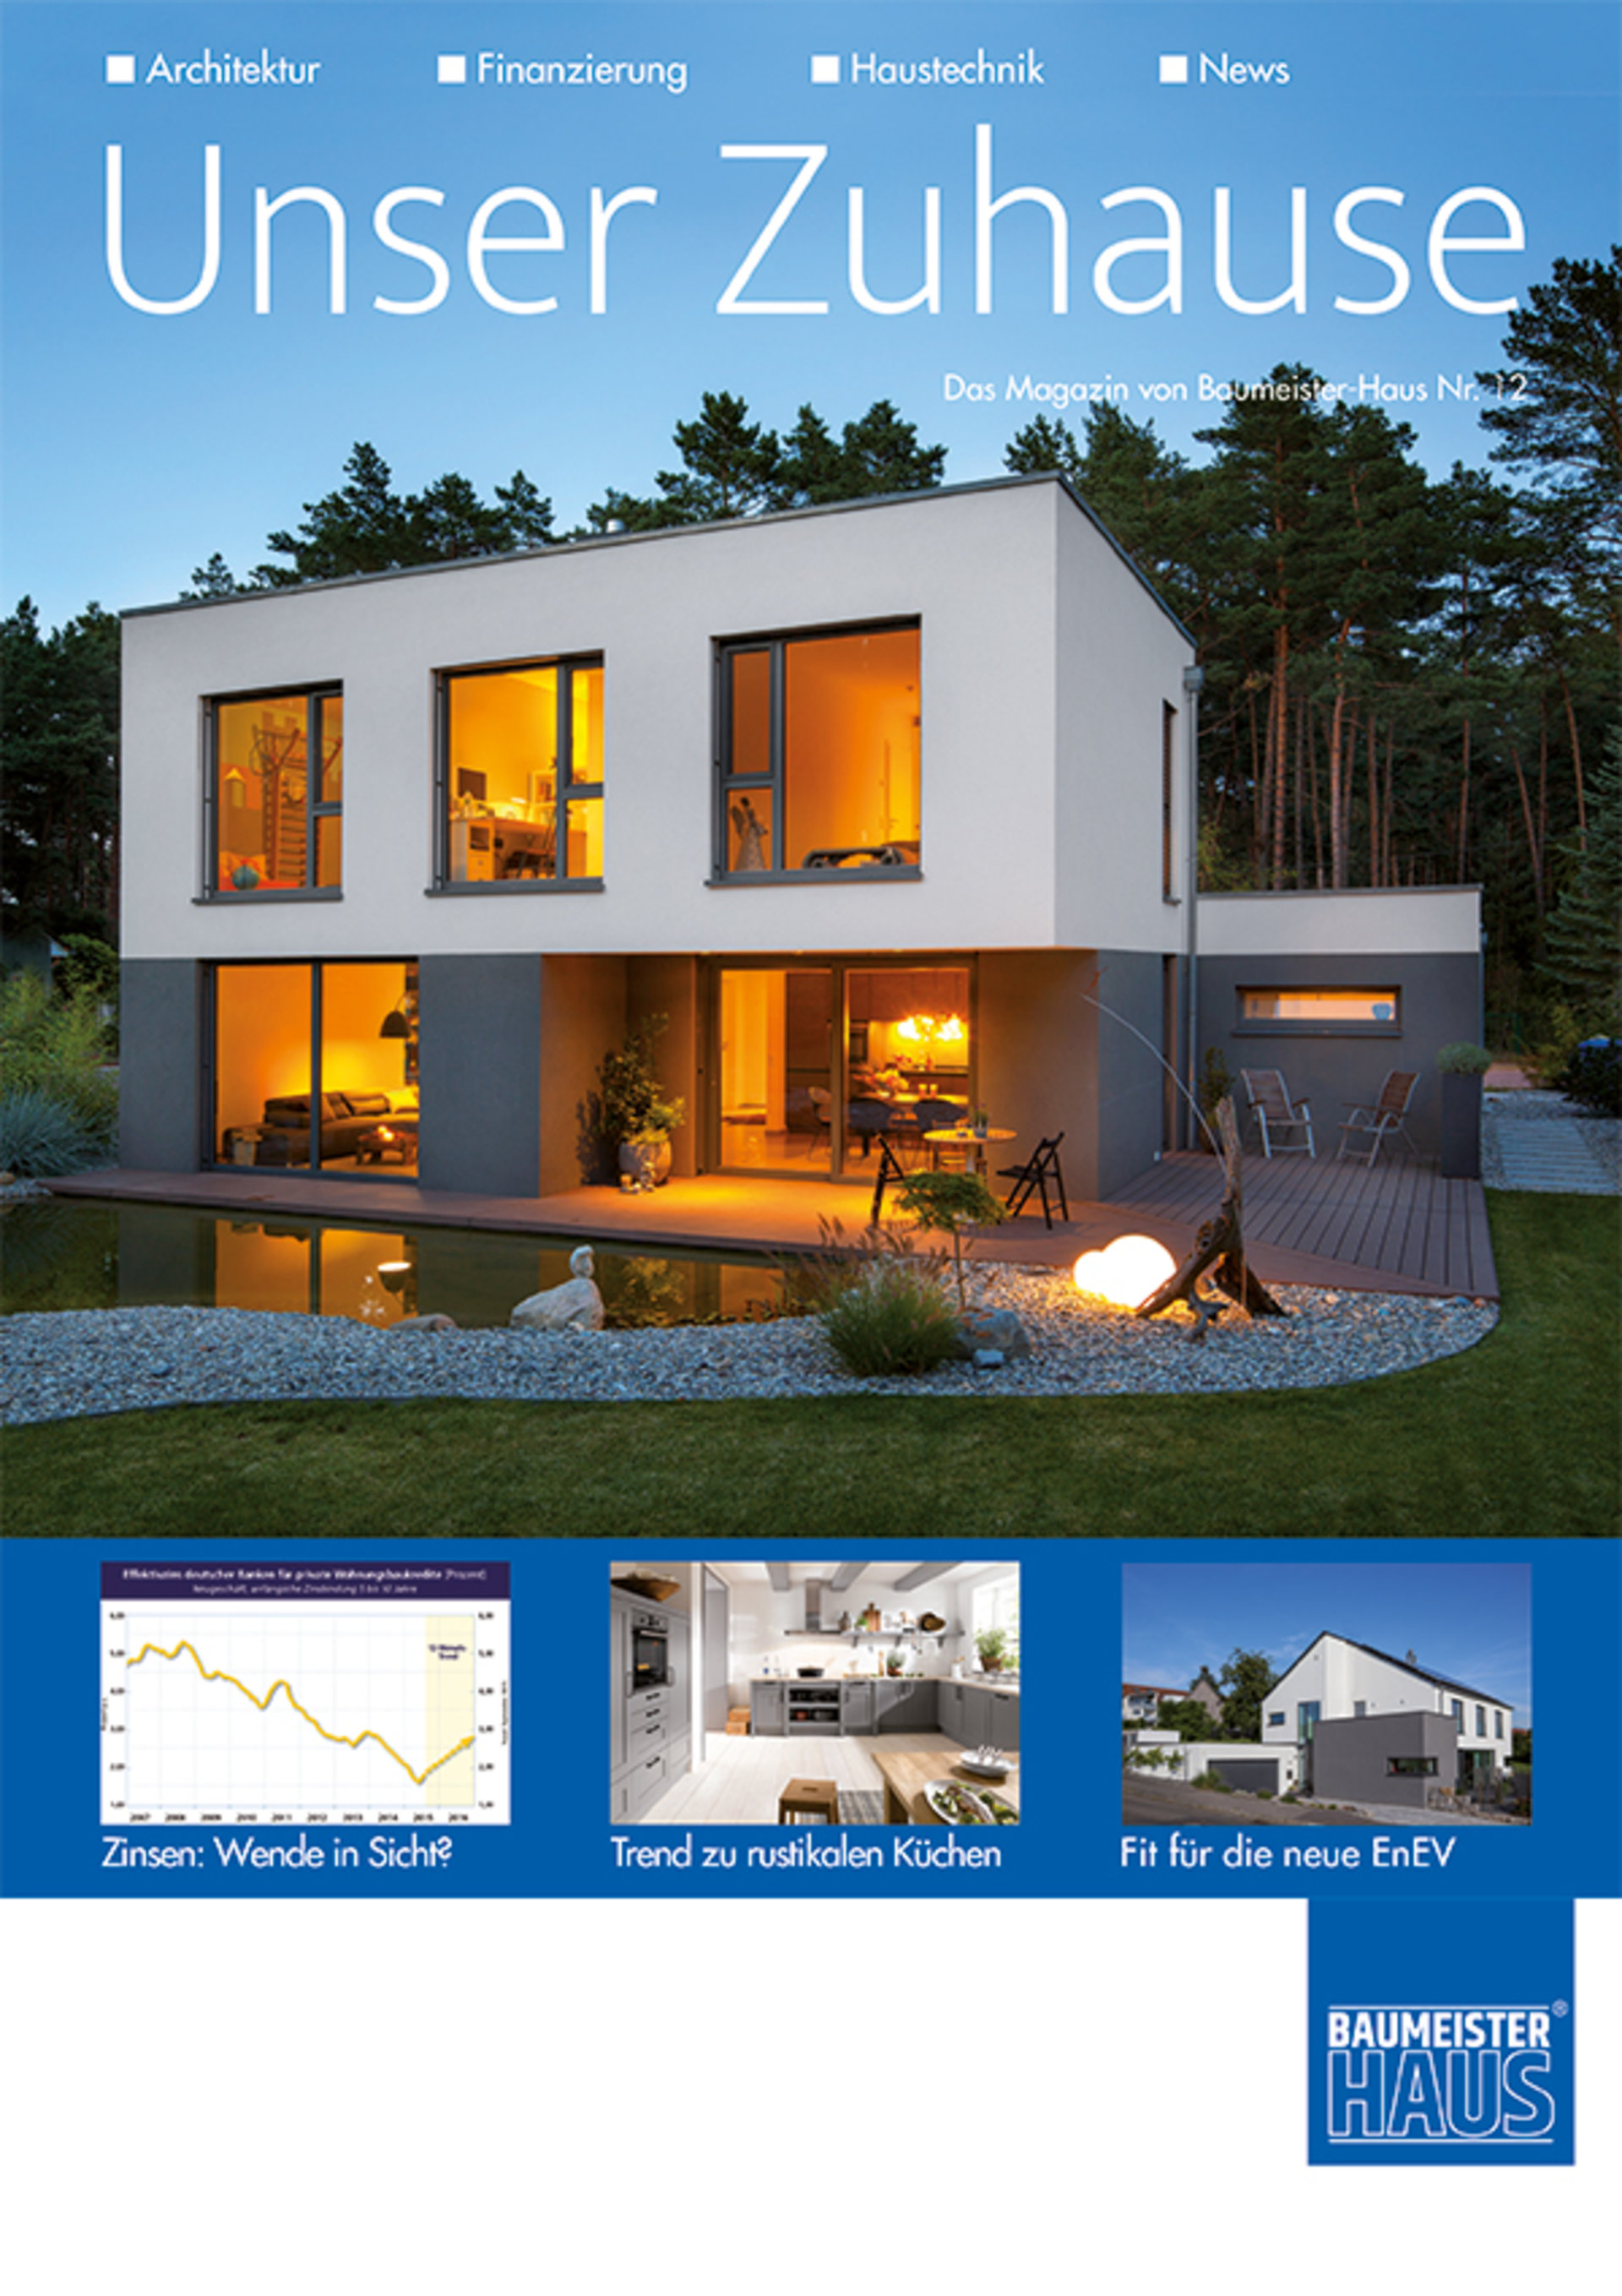 Das Hausmagazin von BAUMEISTER-HAUS mit Informationen und Tipps rund ums Massivhaus bauen und Wohnen.